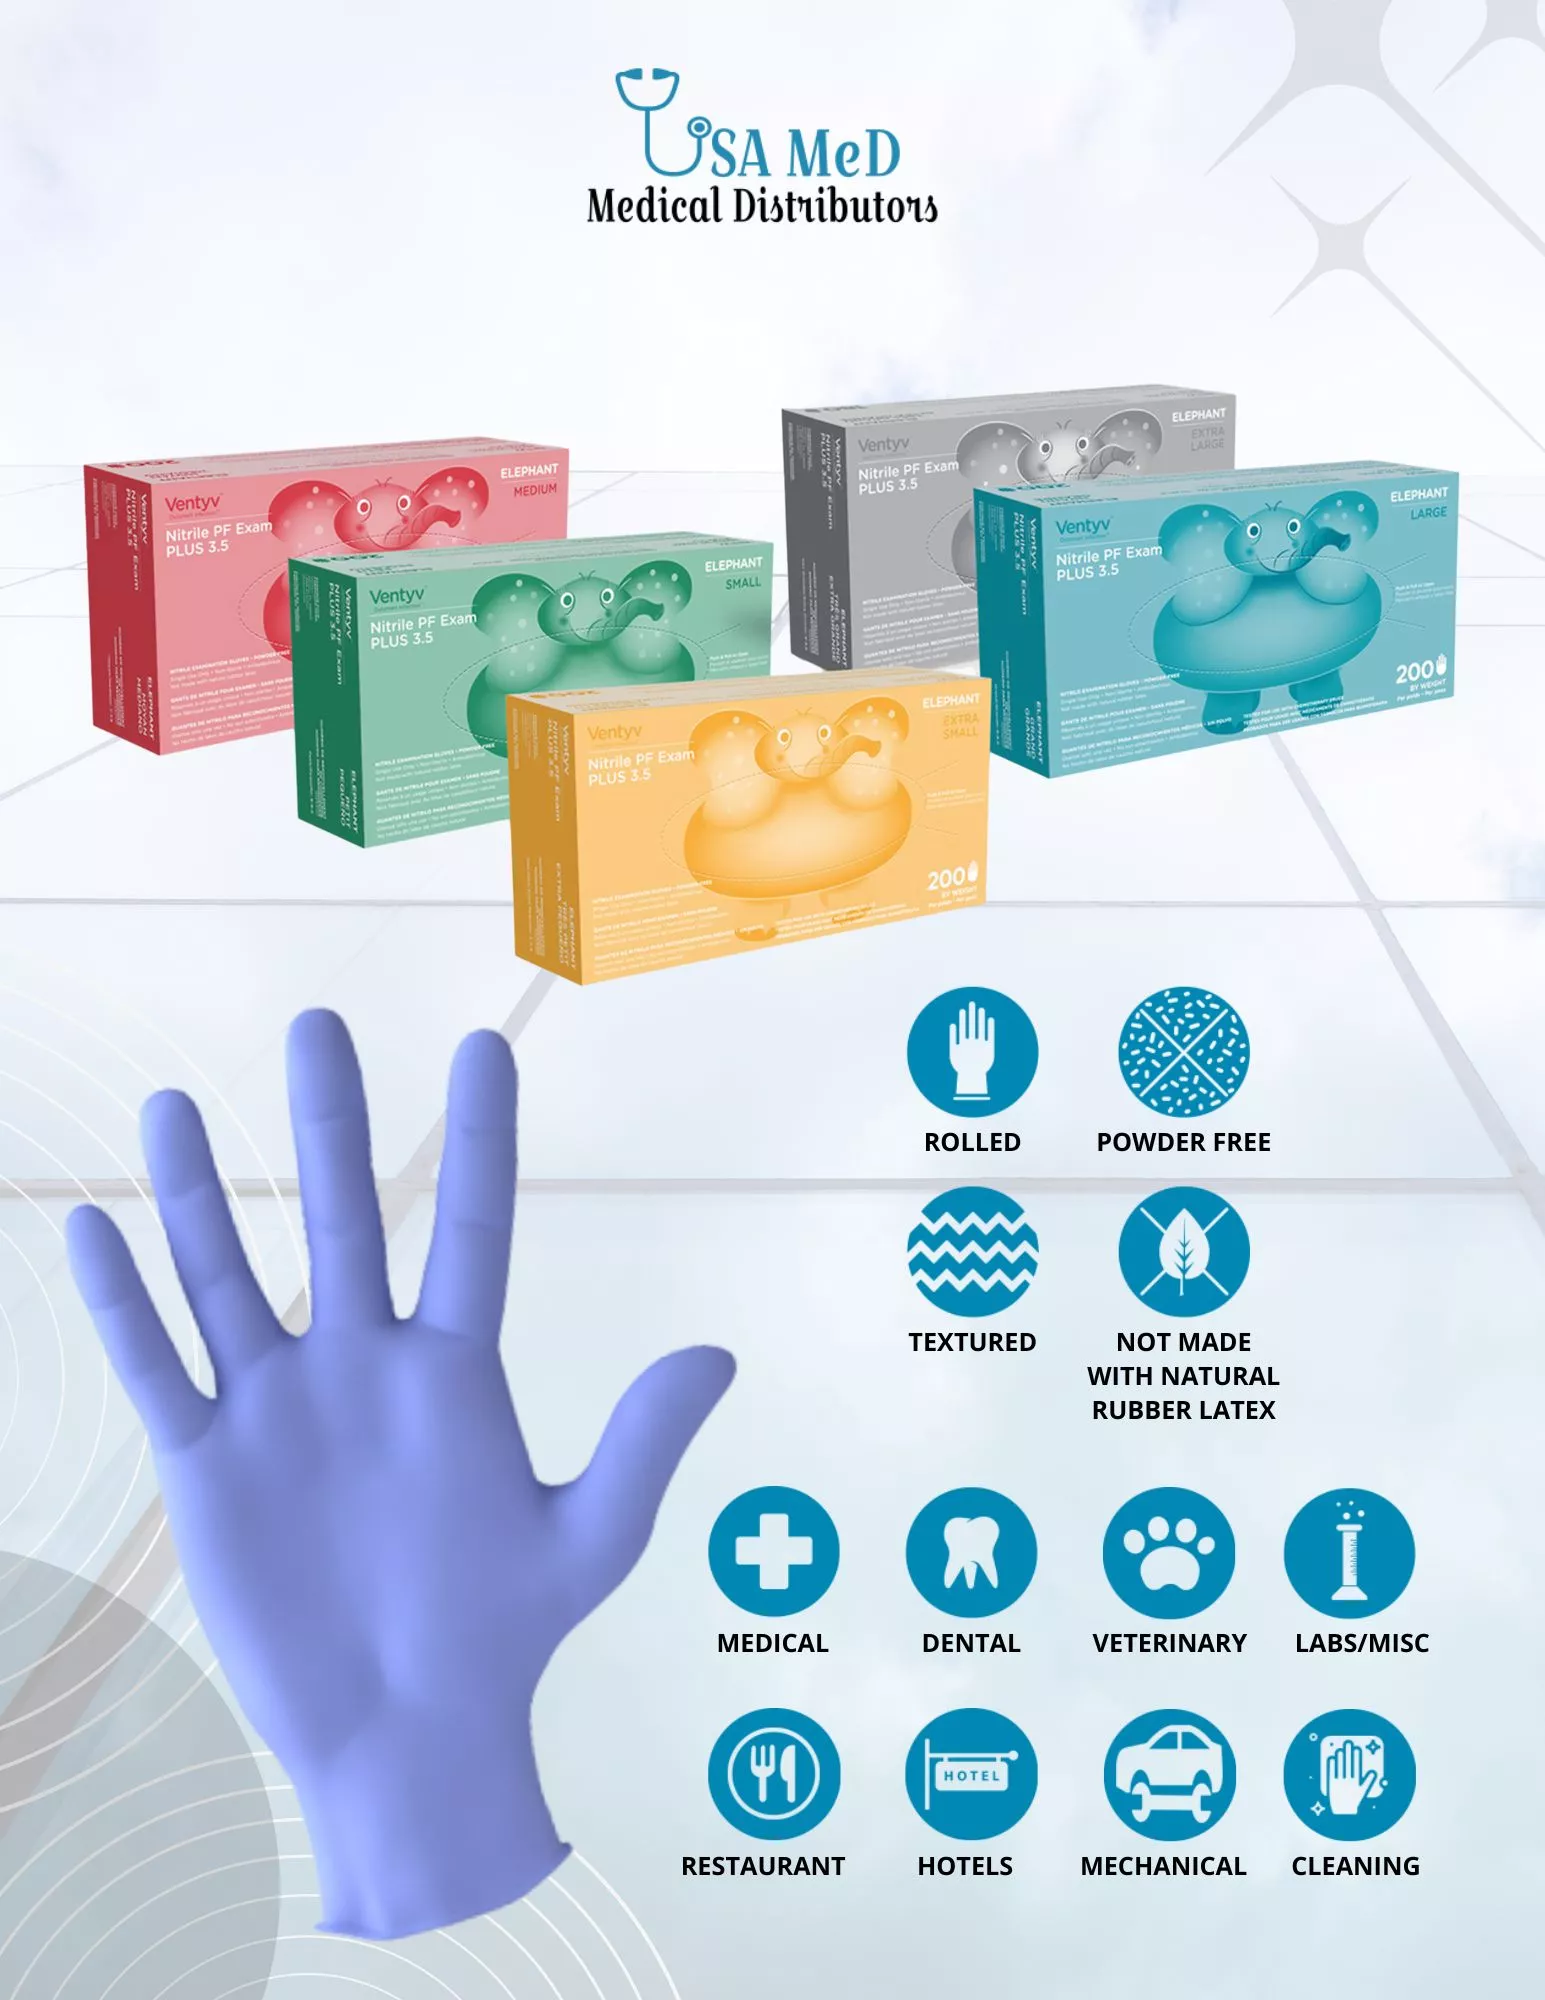 Best Price for Nitrile Gloves, Disposable Surgical Gloves Online - USA Medical Distributors - USAMED Medical Distributors